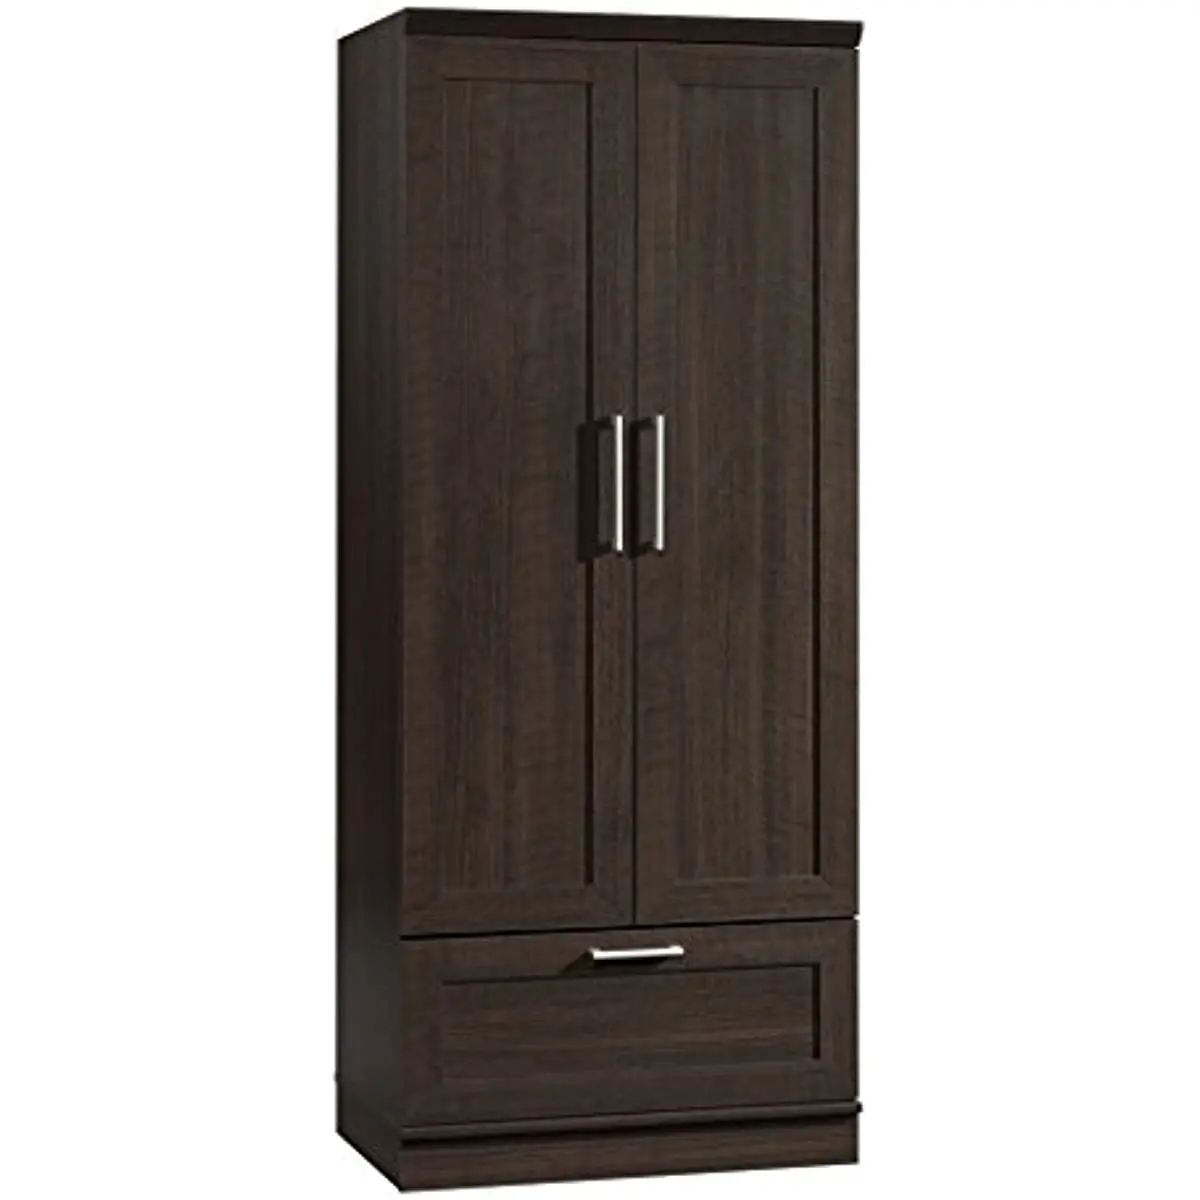 

Шкаф для одежды Sauder HomePlus, Д: 28,98 x Ш: 20,95 x В: 71,18 дюйма, Дубовая отделка Dakota